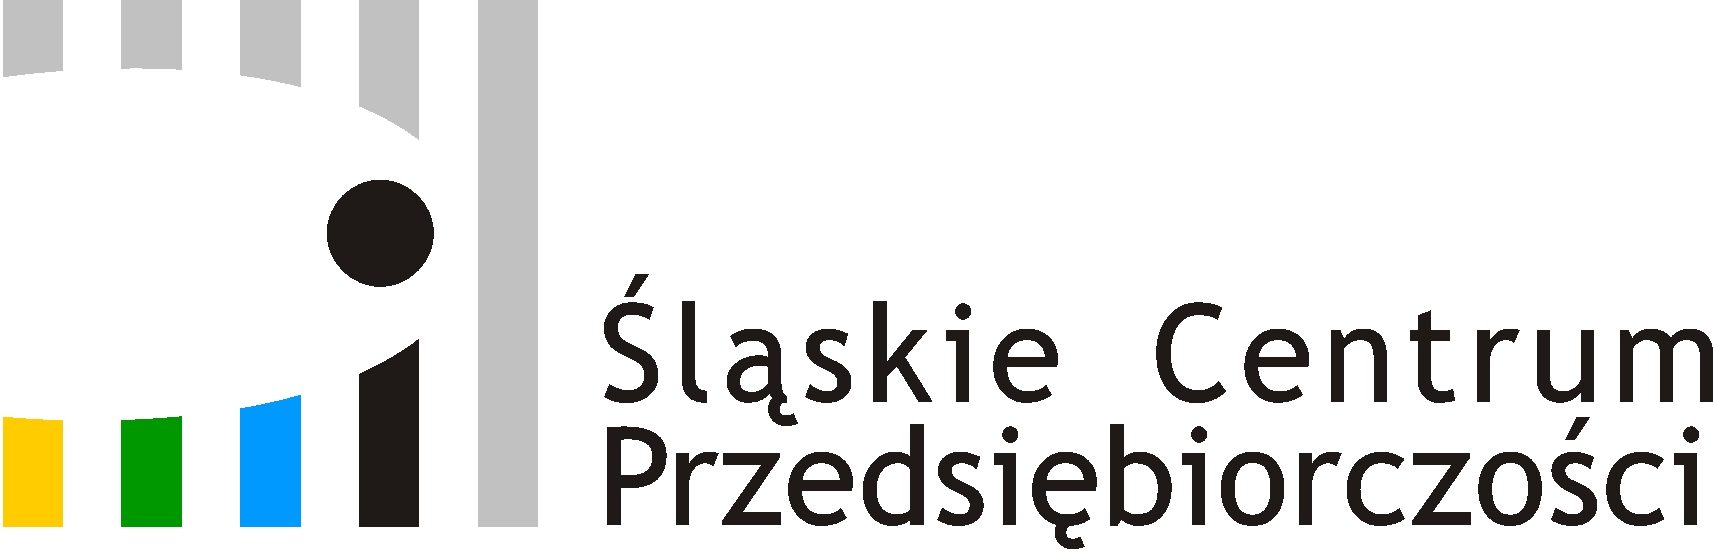 Śląskie Centrum Przedsiębiorczości